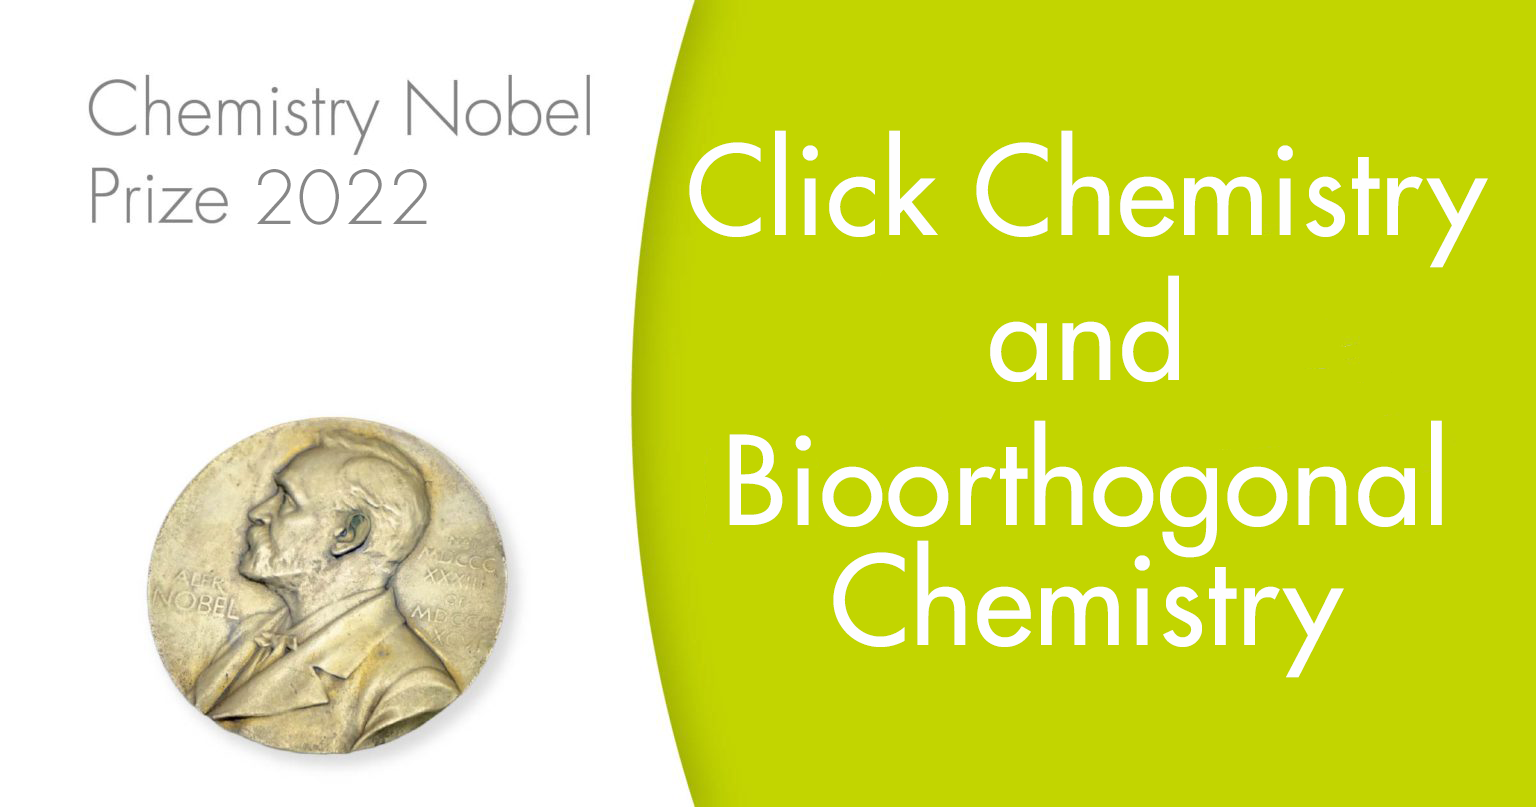 Chemistry Nobel Prize 2022